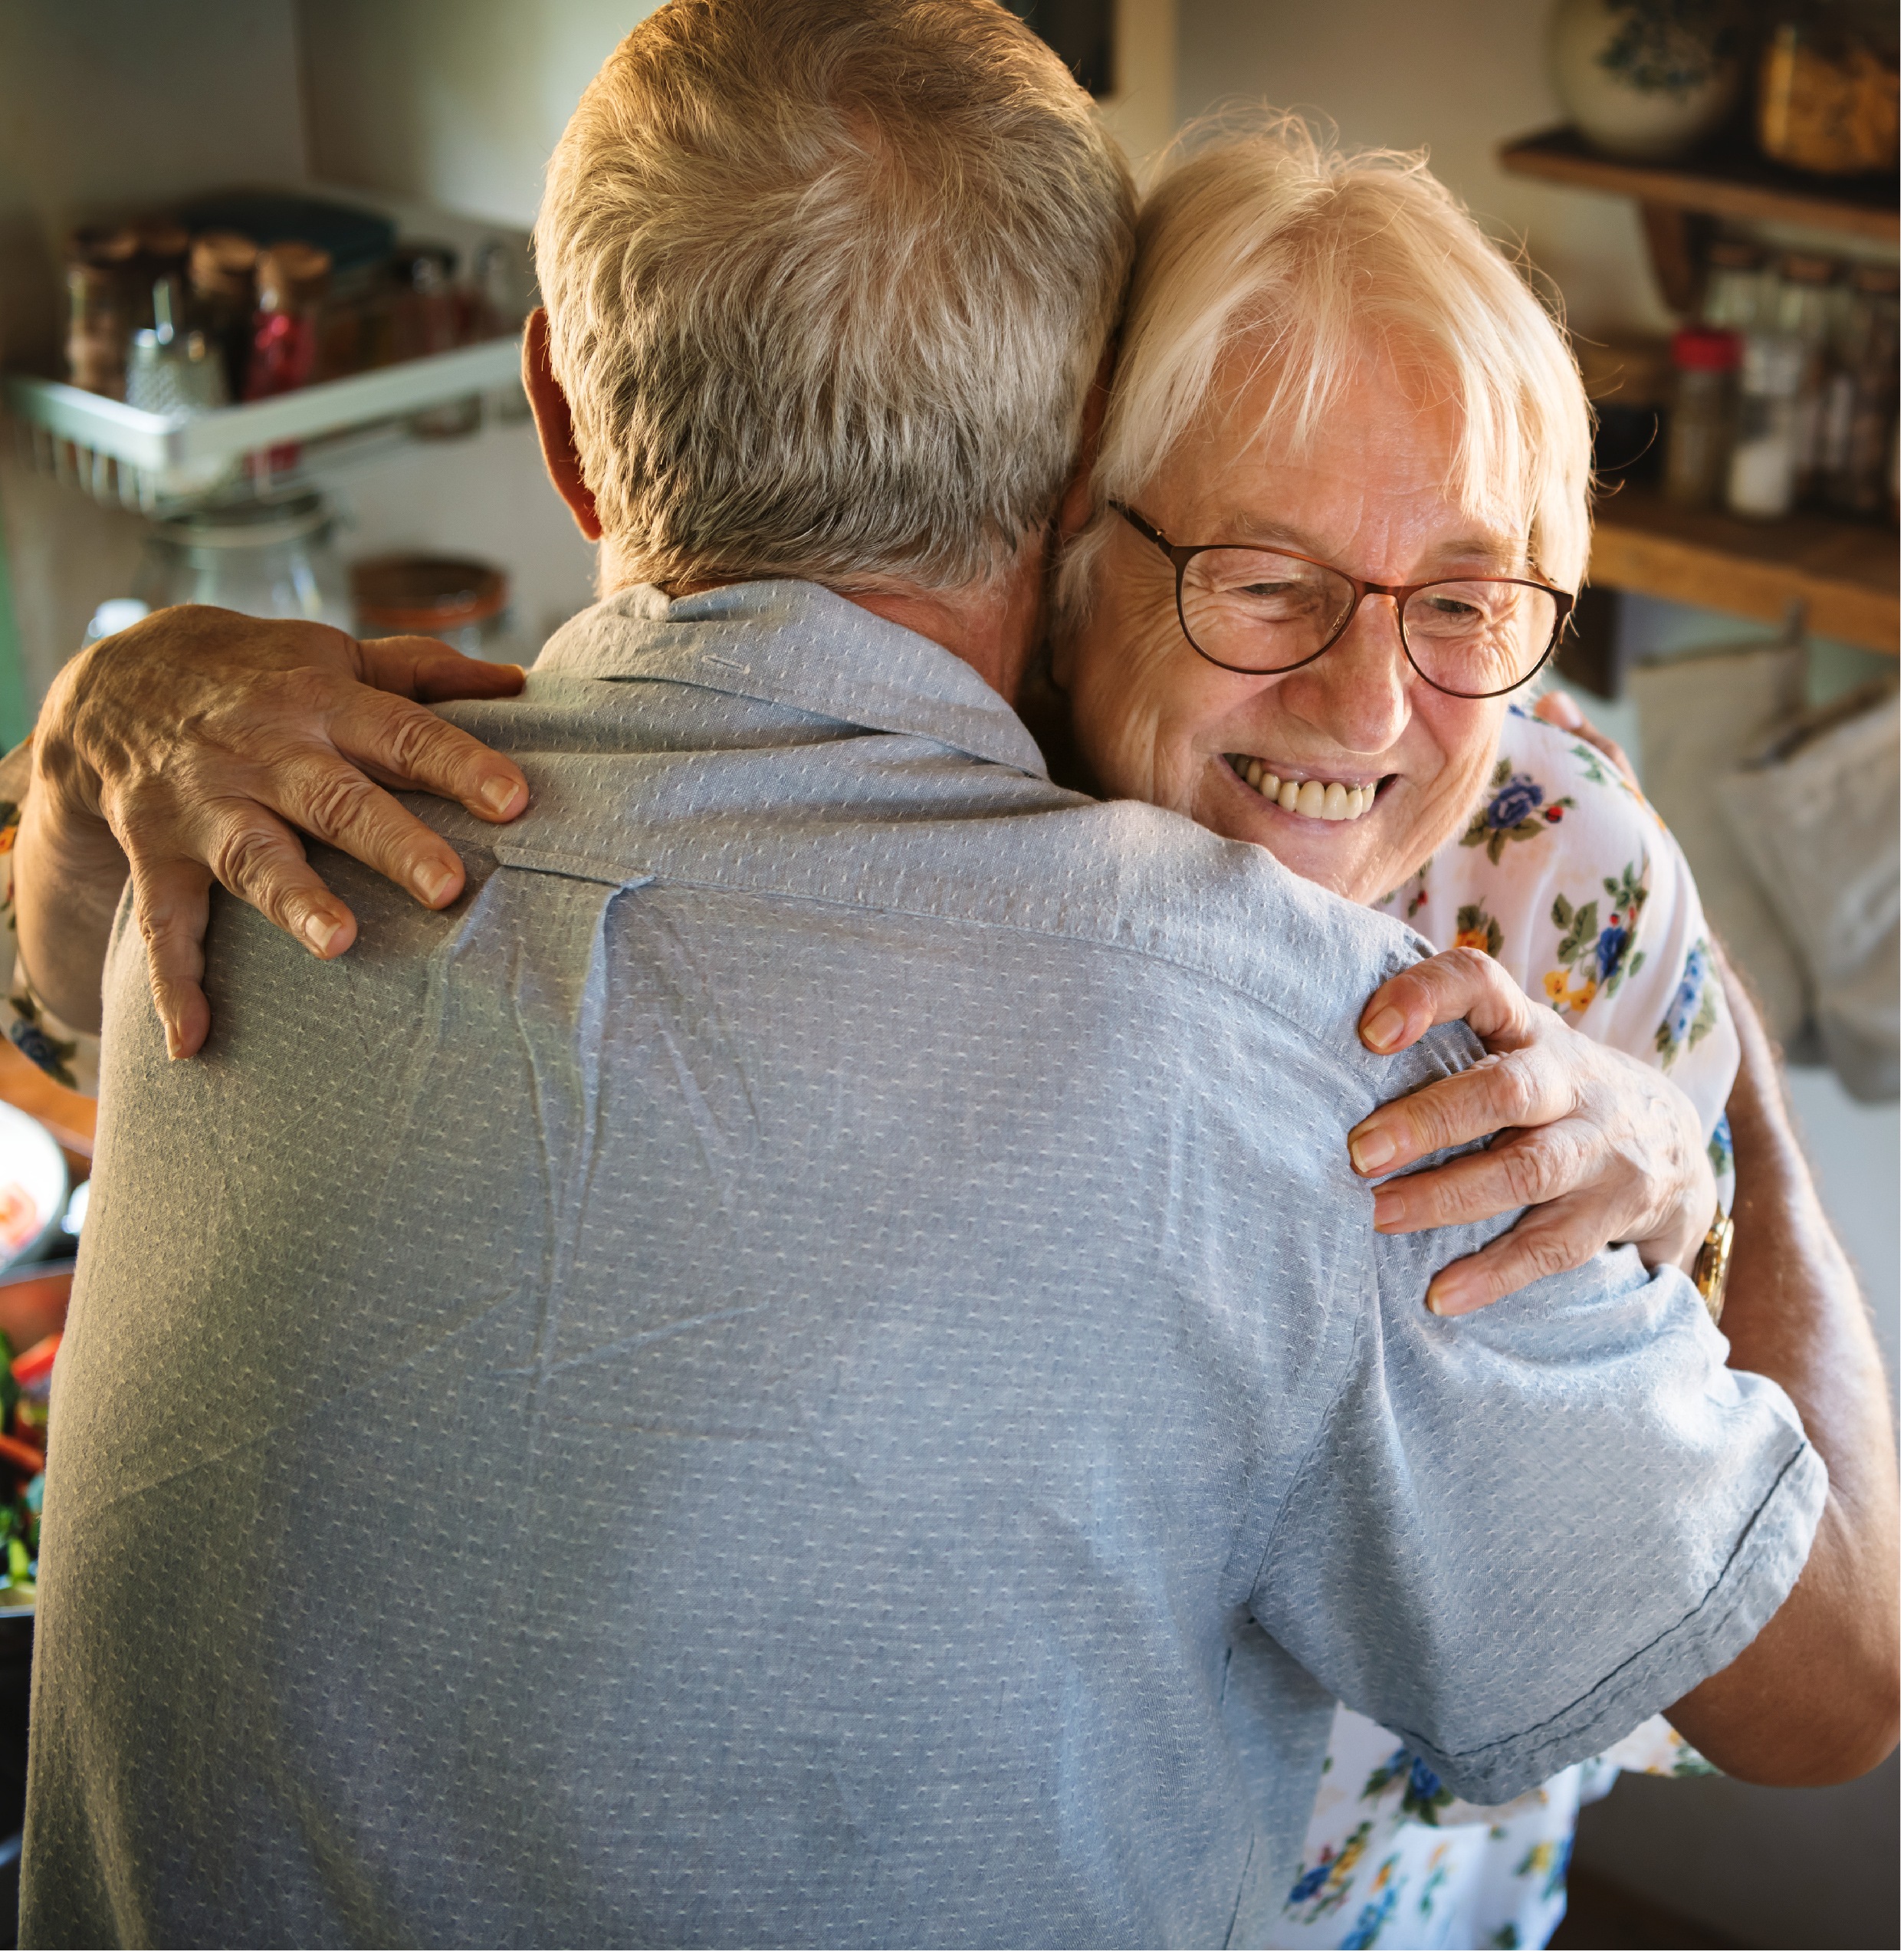 Senior family caregiver couple embracing